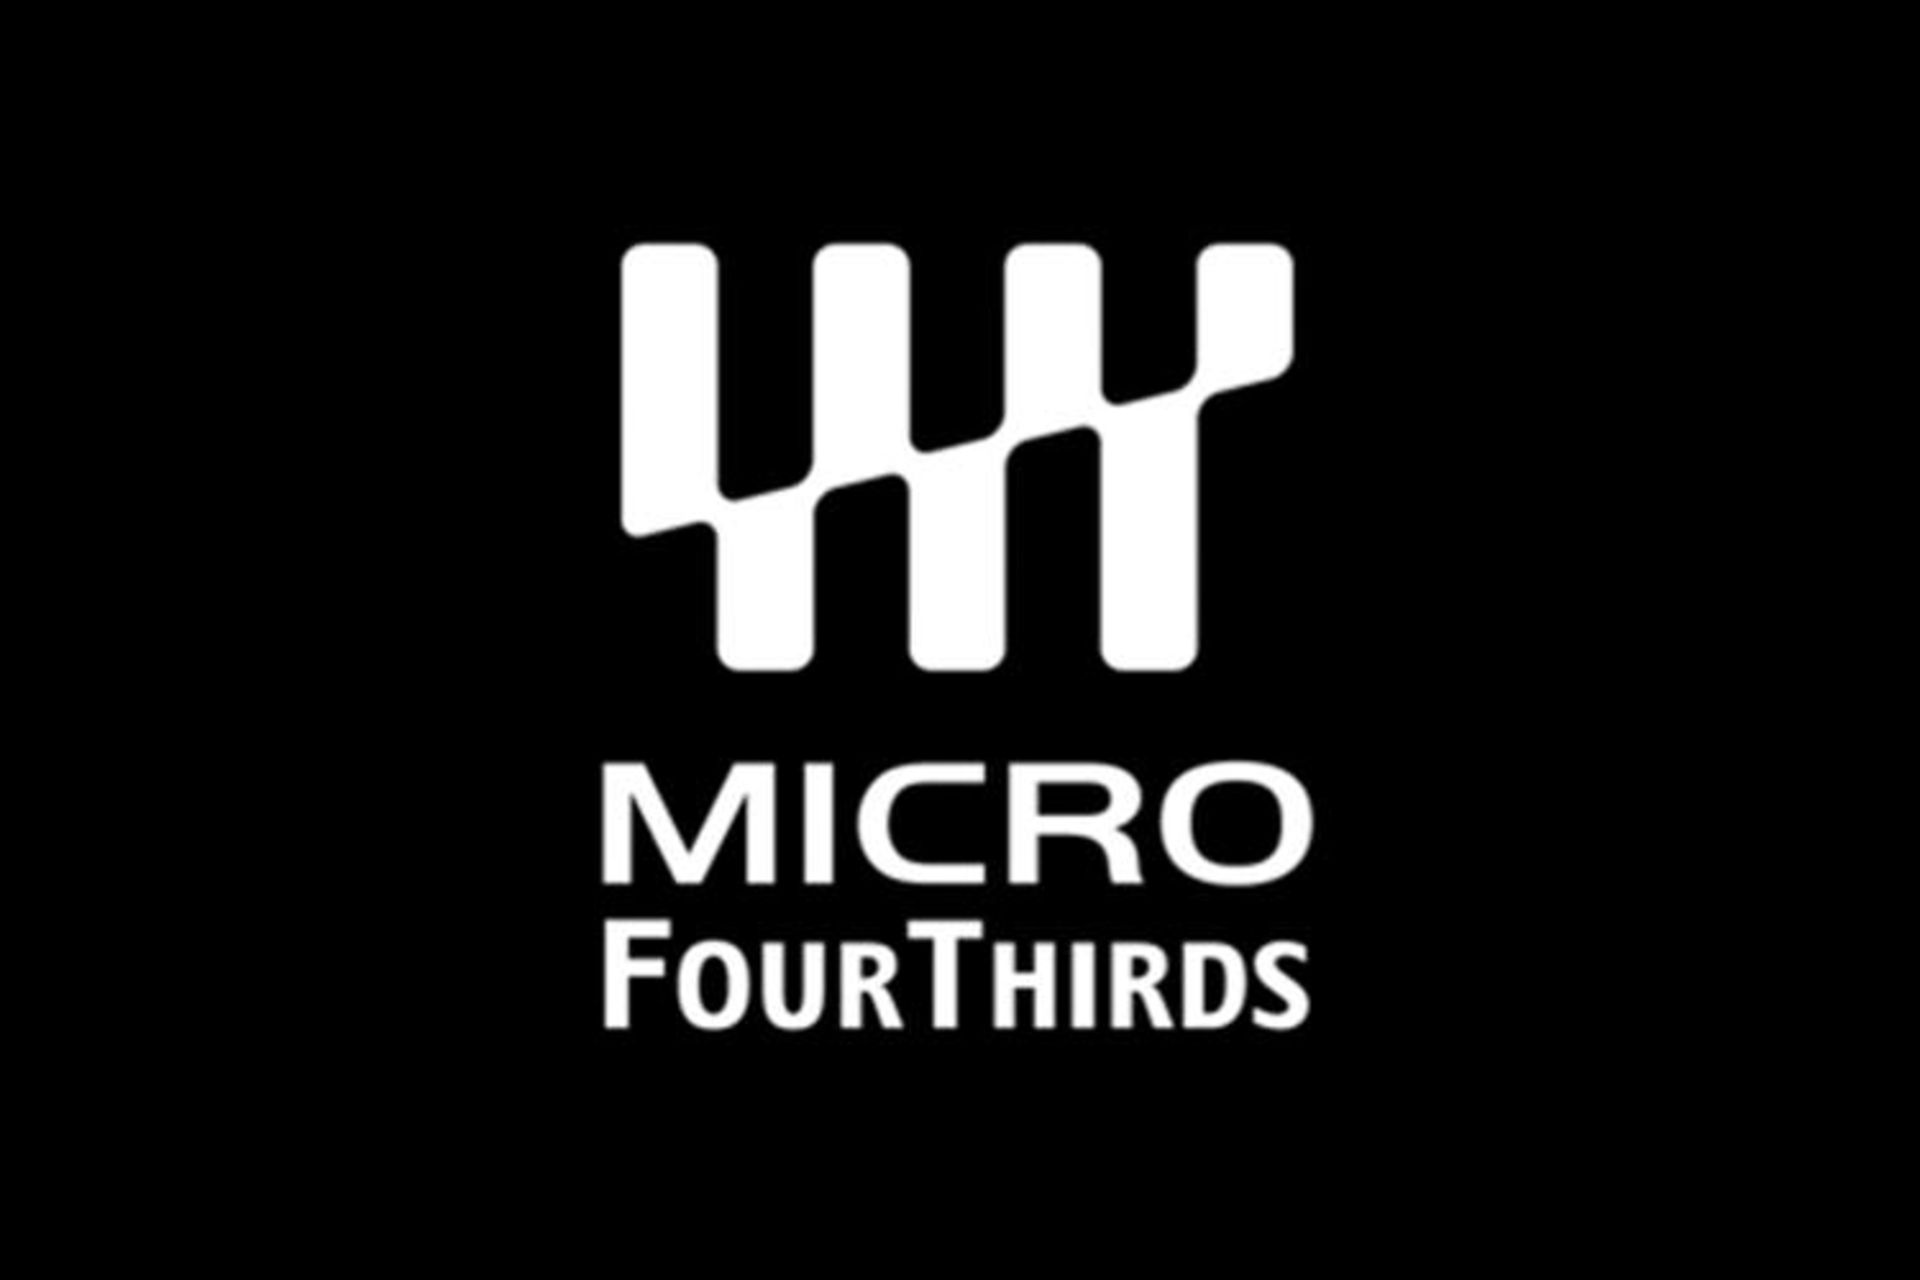 لوگو سیستم عکاسی میکرو چهارسوم Micro four third